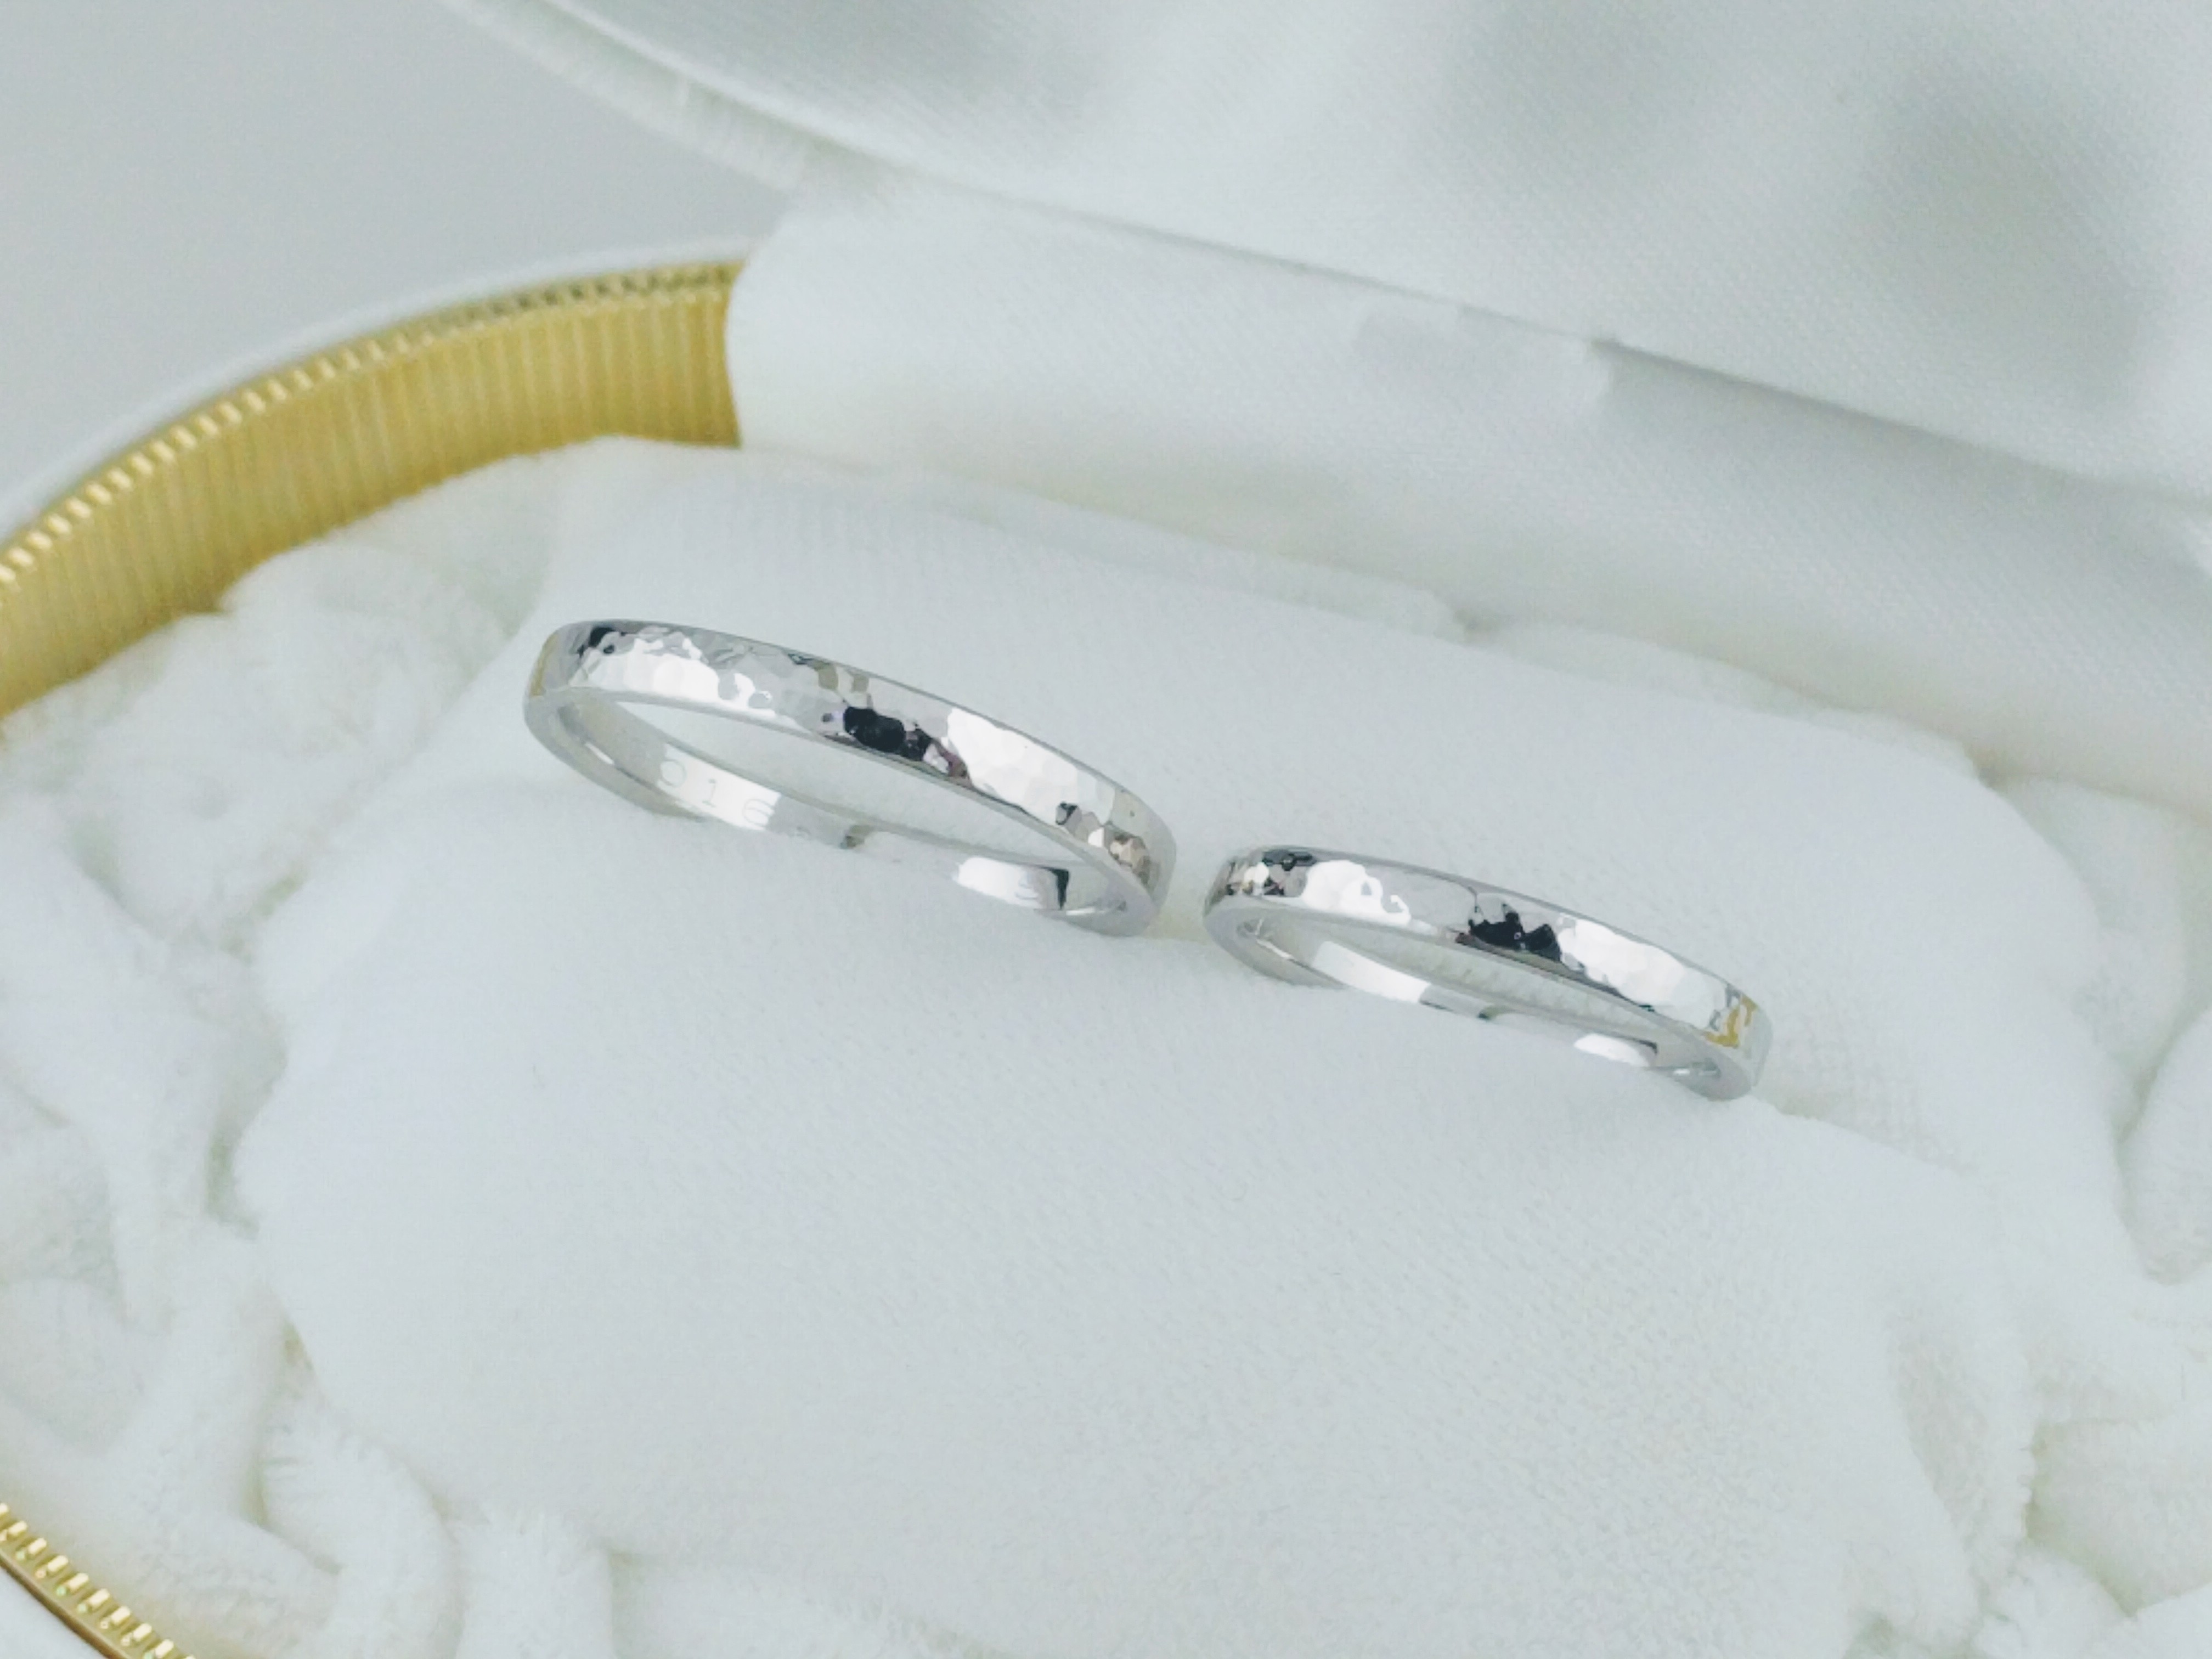 マリッジリング制作 オーダーメイド プラチナ making marriage ring made-to-order platinum